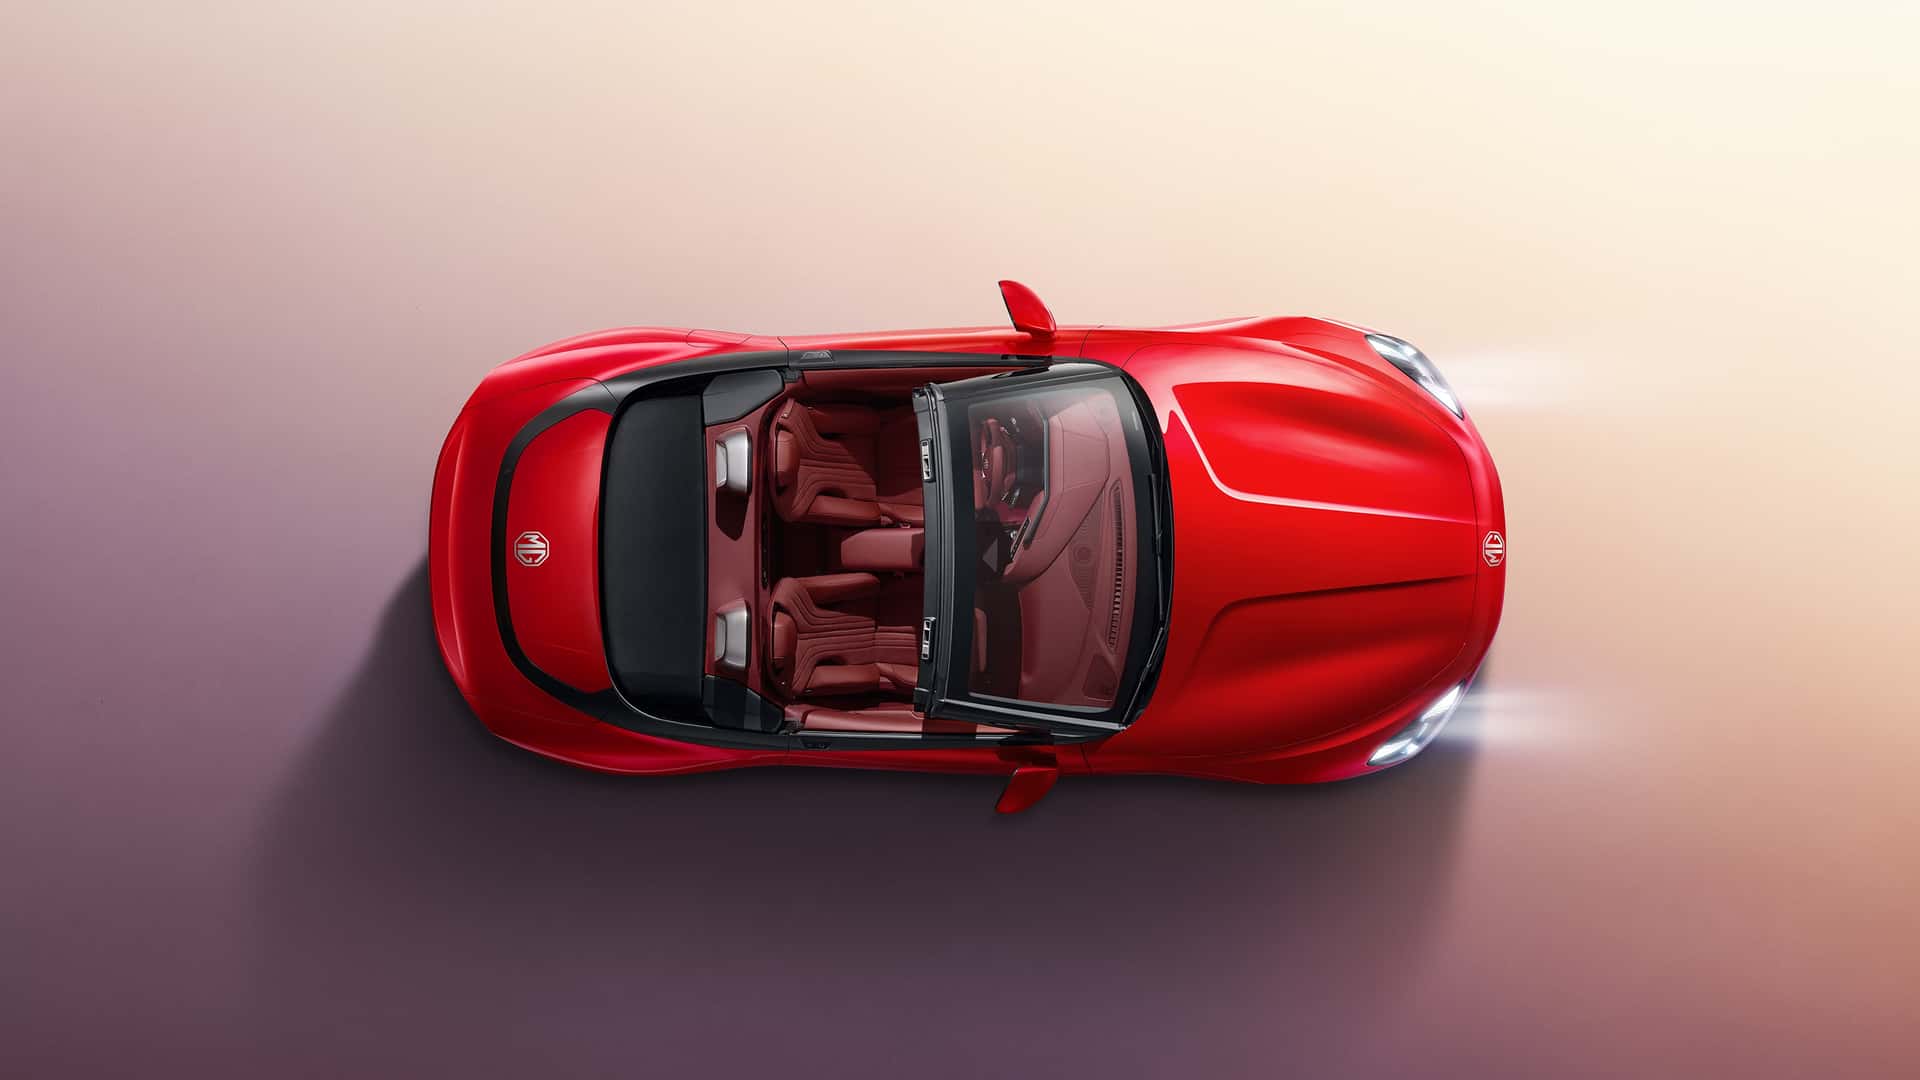 ام جي تكشف الداخلية البديعة لسيارة سايبرستر رودستر الجديدة كلياً 5